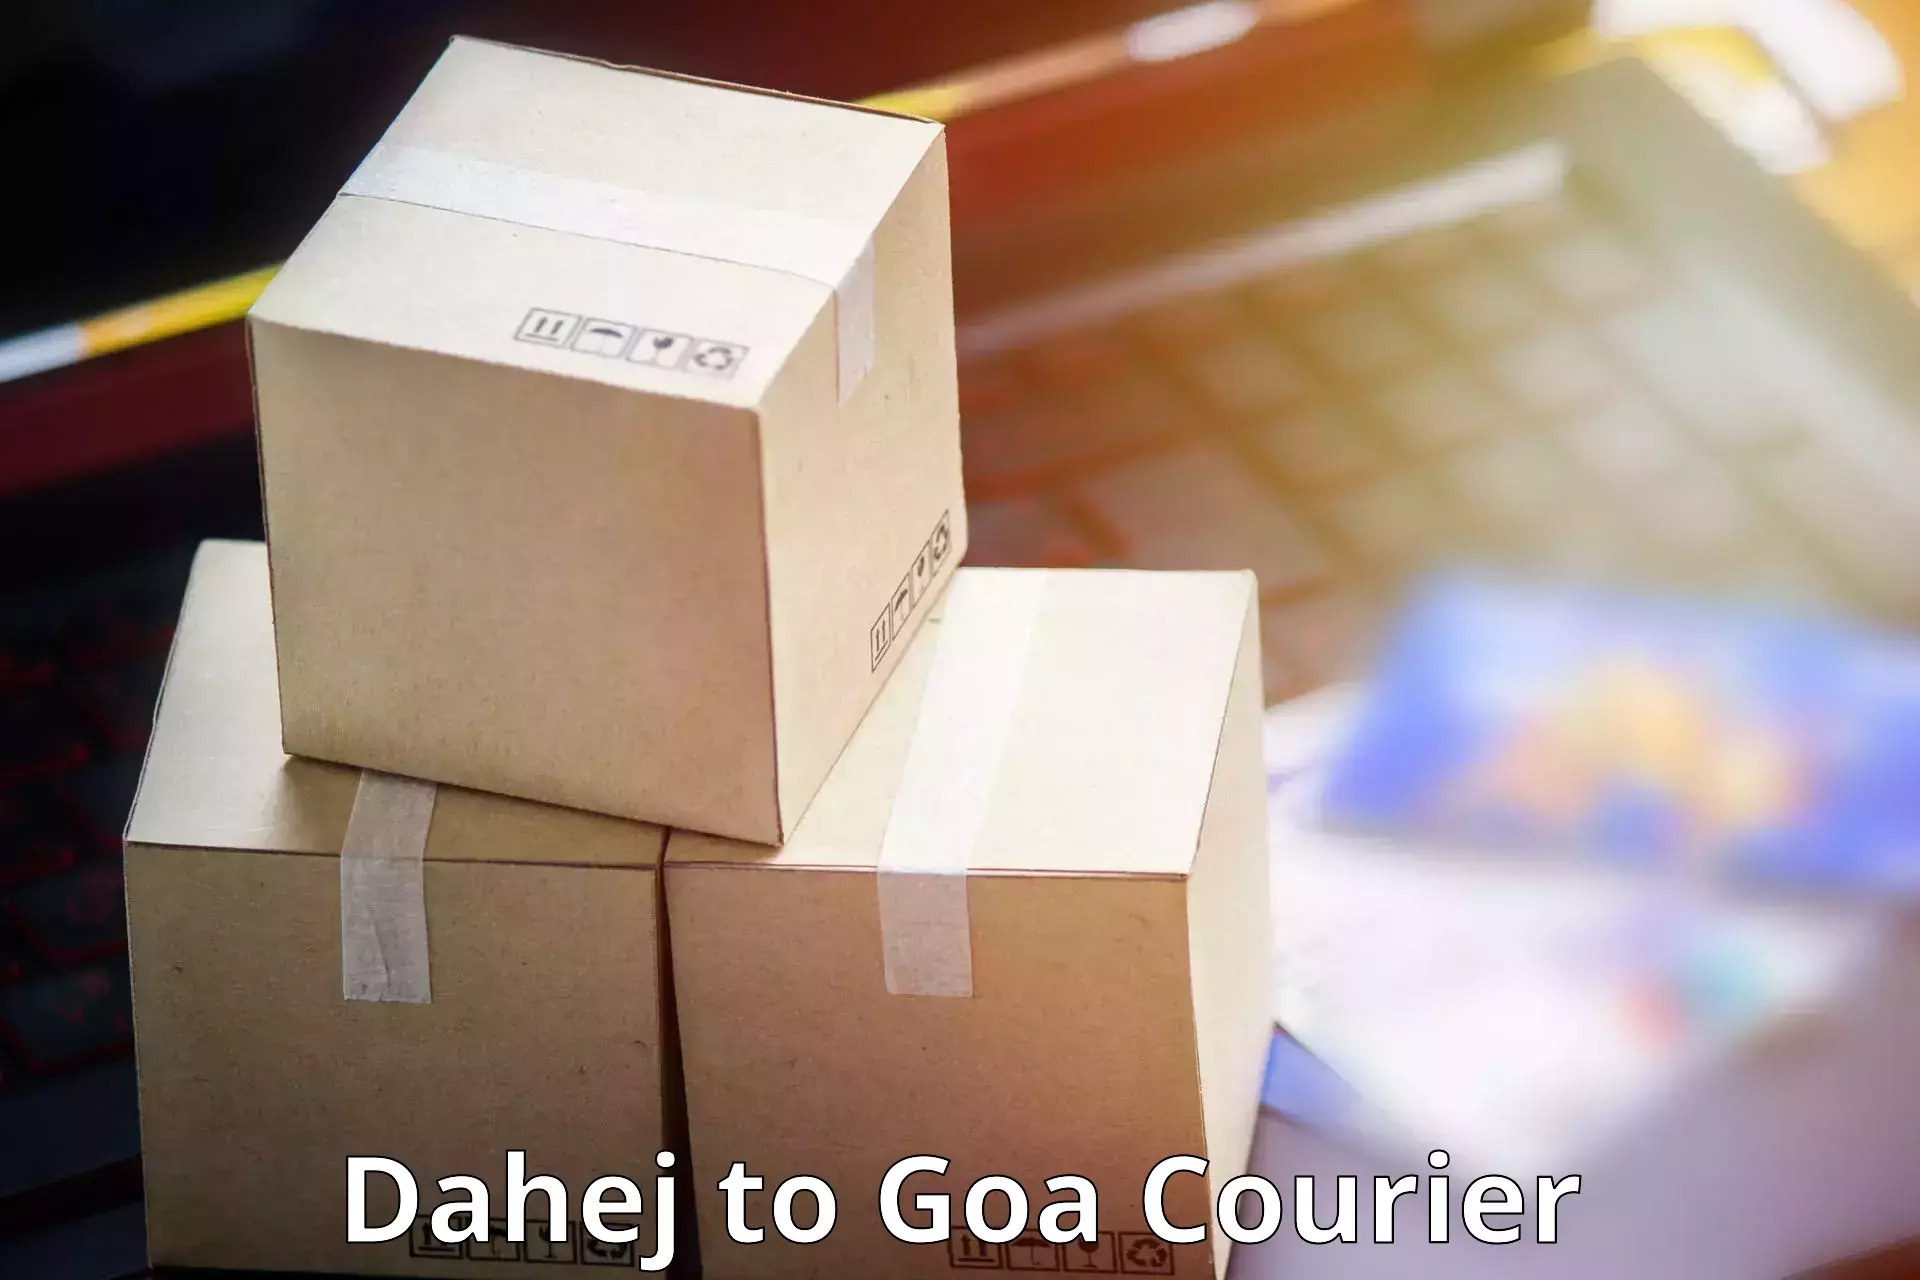 Efficient courier operations Dahej to Vasco da Gama